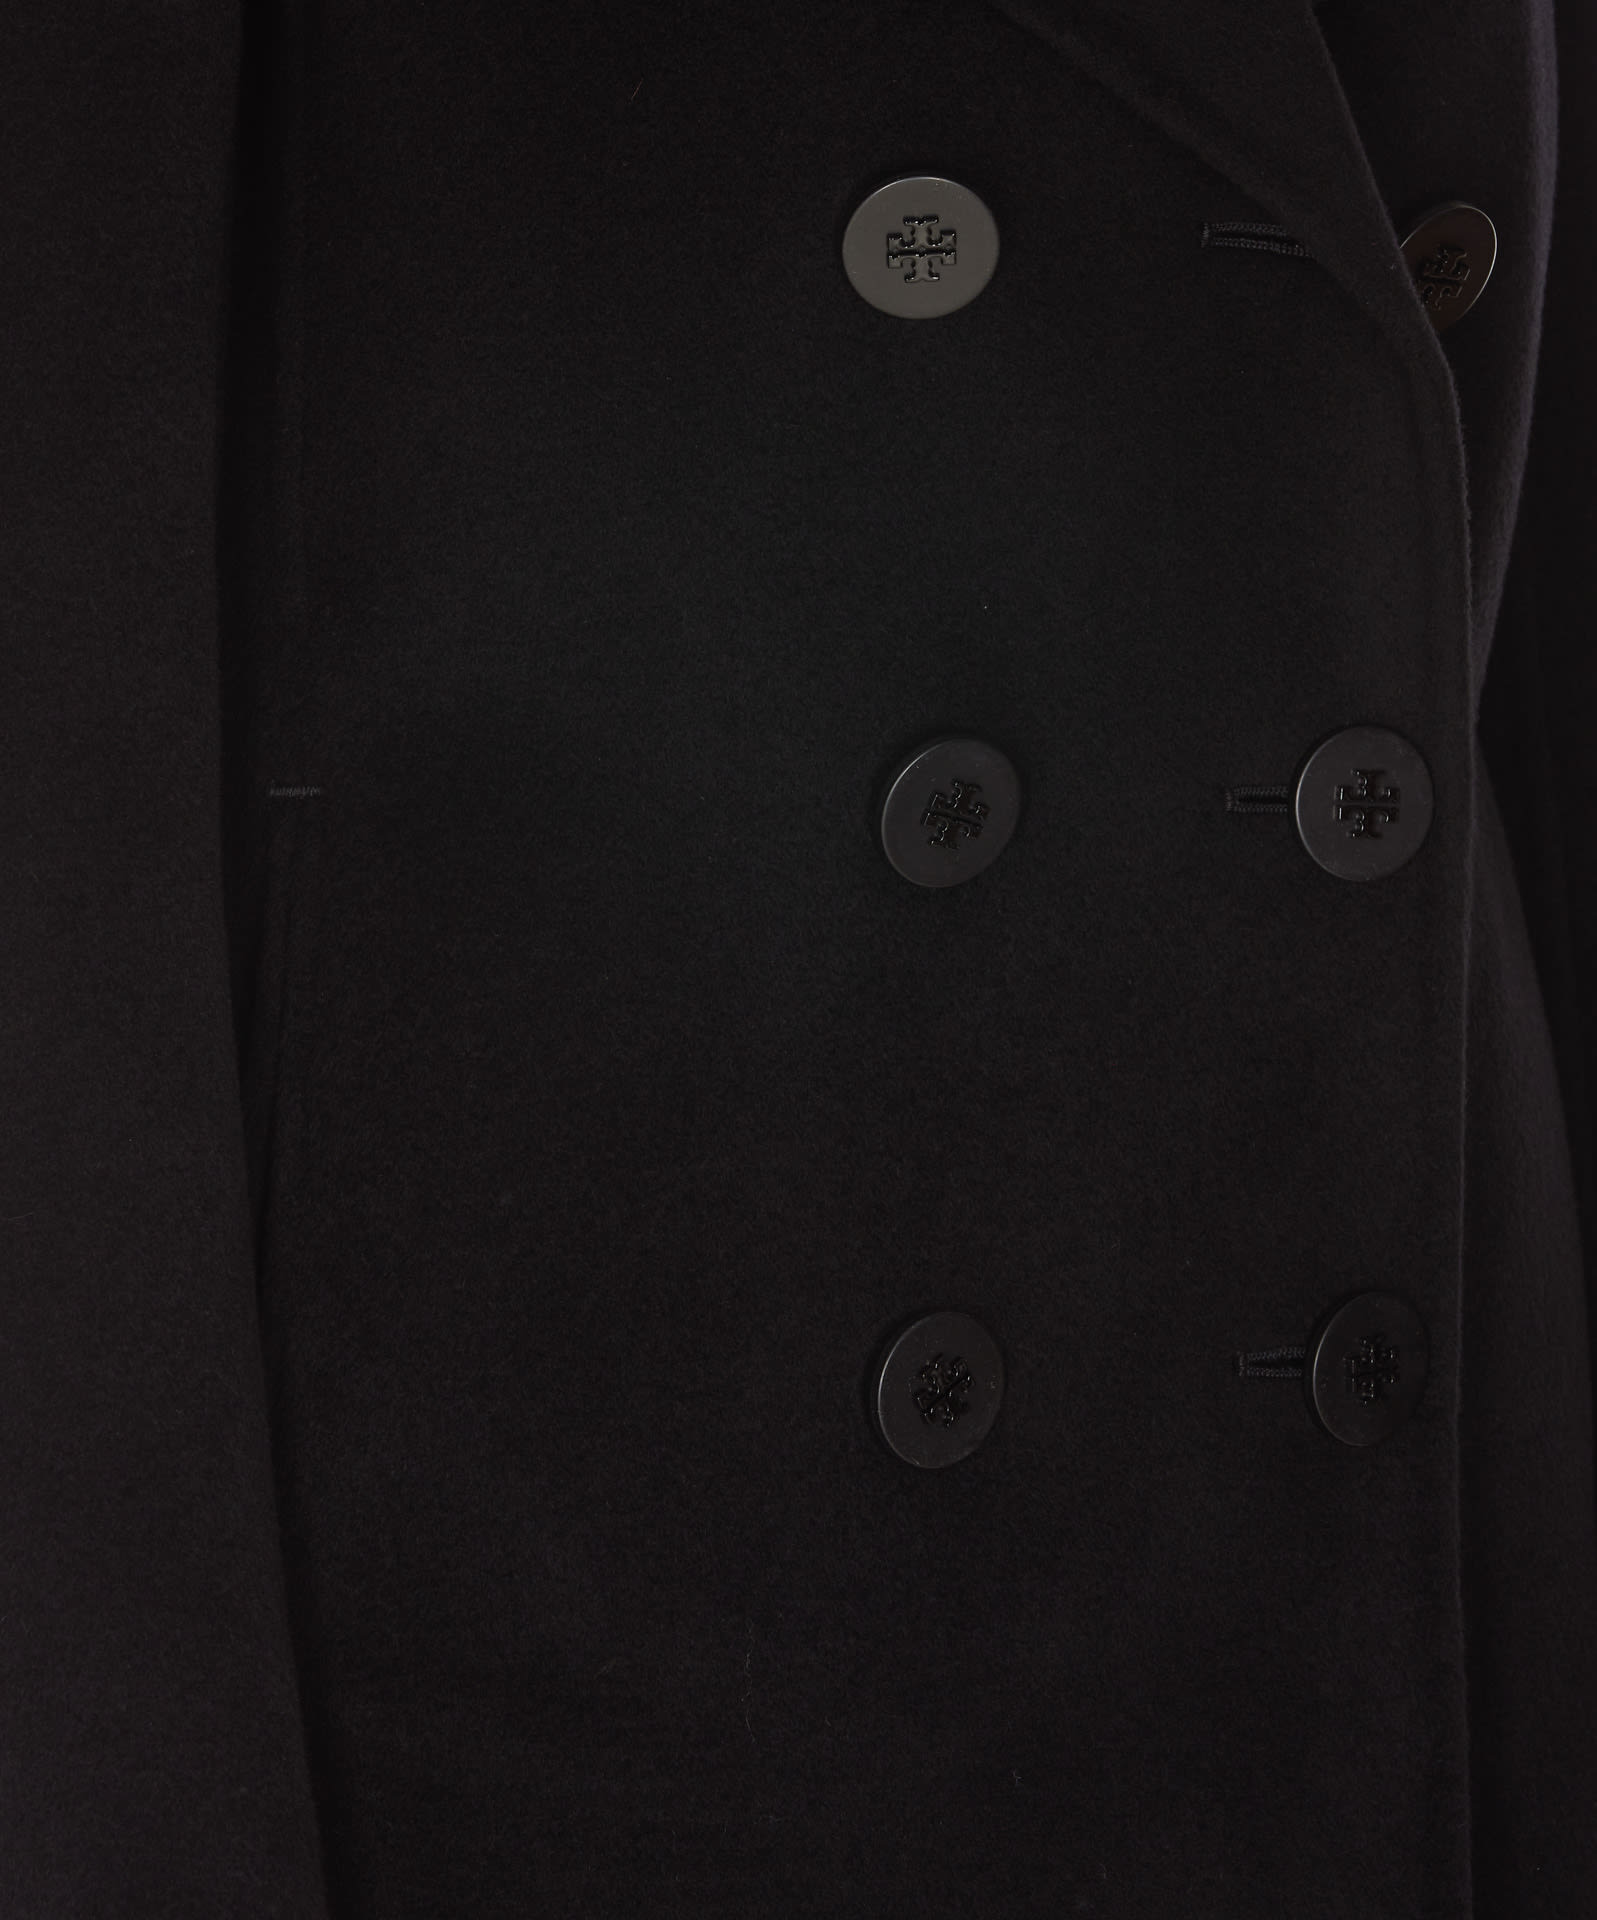 Shop Tory Burch Coat In Black